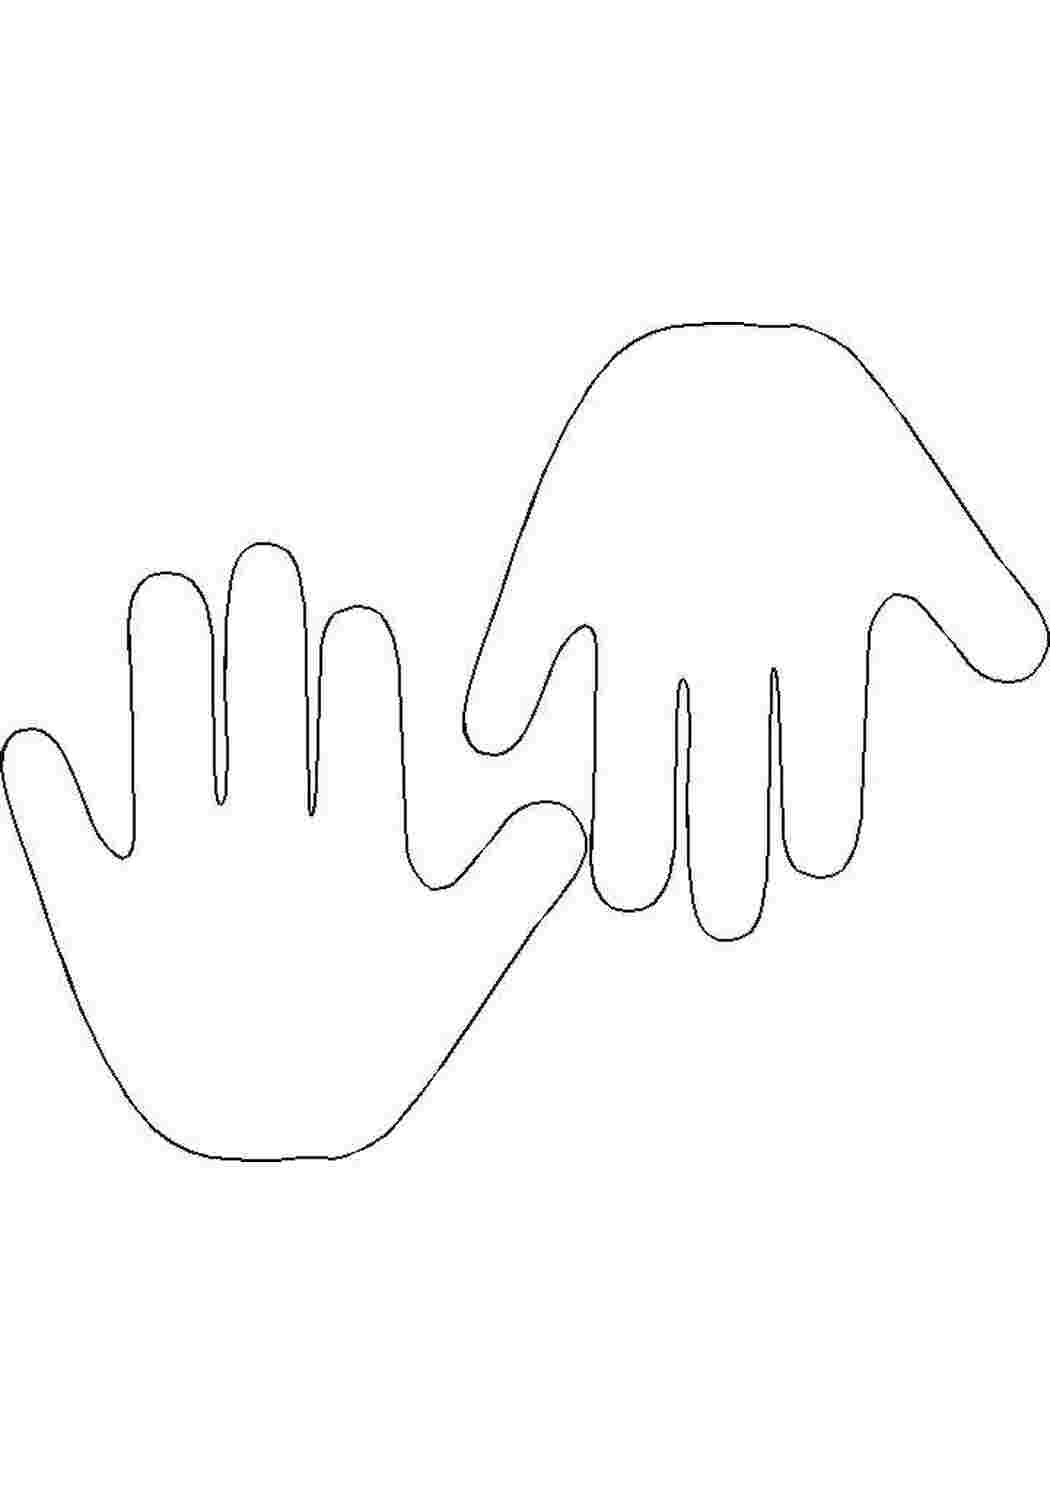 Раскраски Контур двух ладошек Контур руки и ладошки для вырезания контур, ладони, пальцы